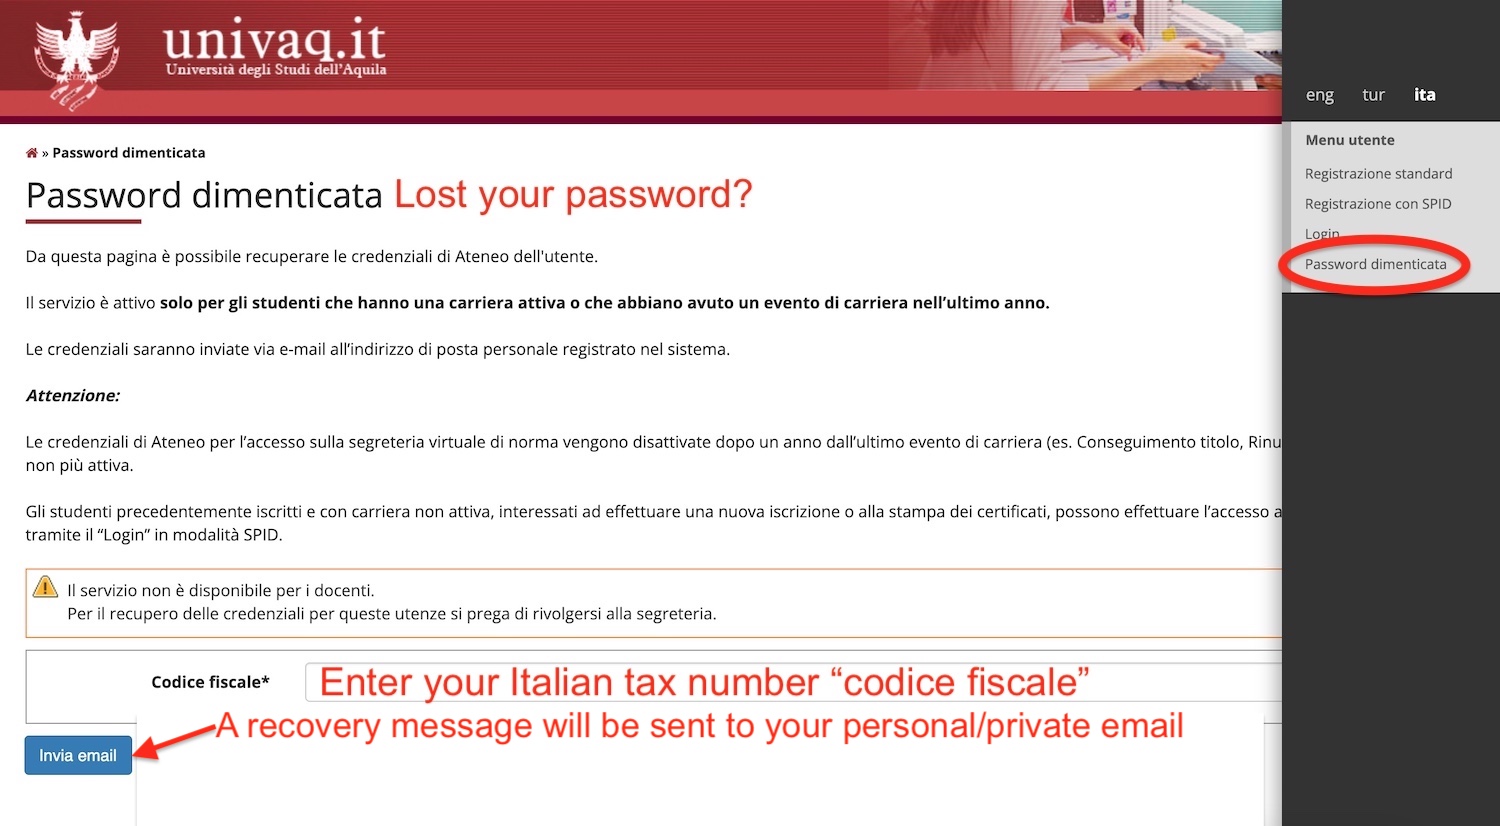 10-lost-password.jpg